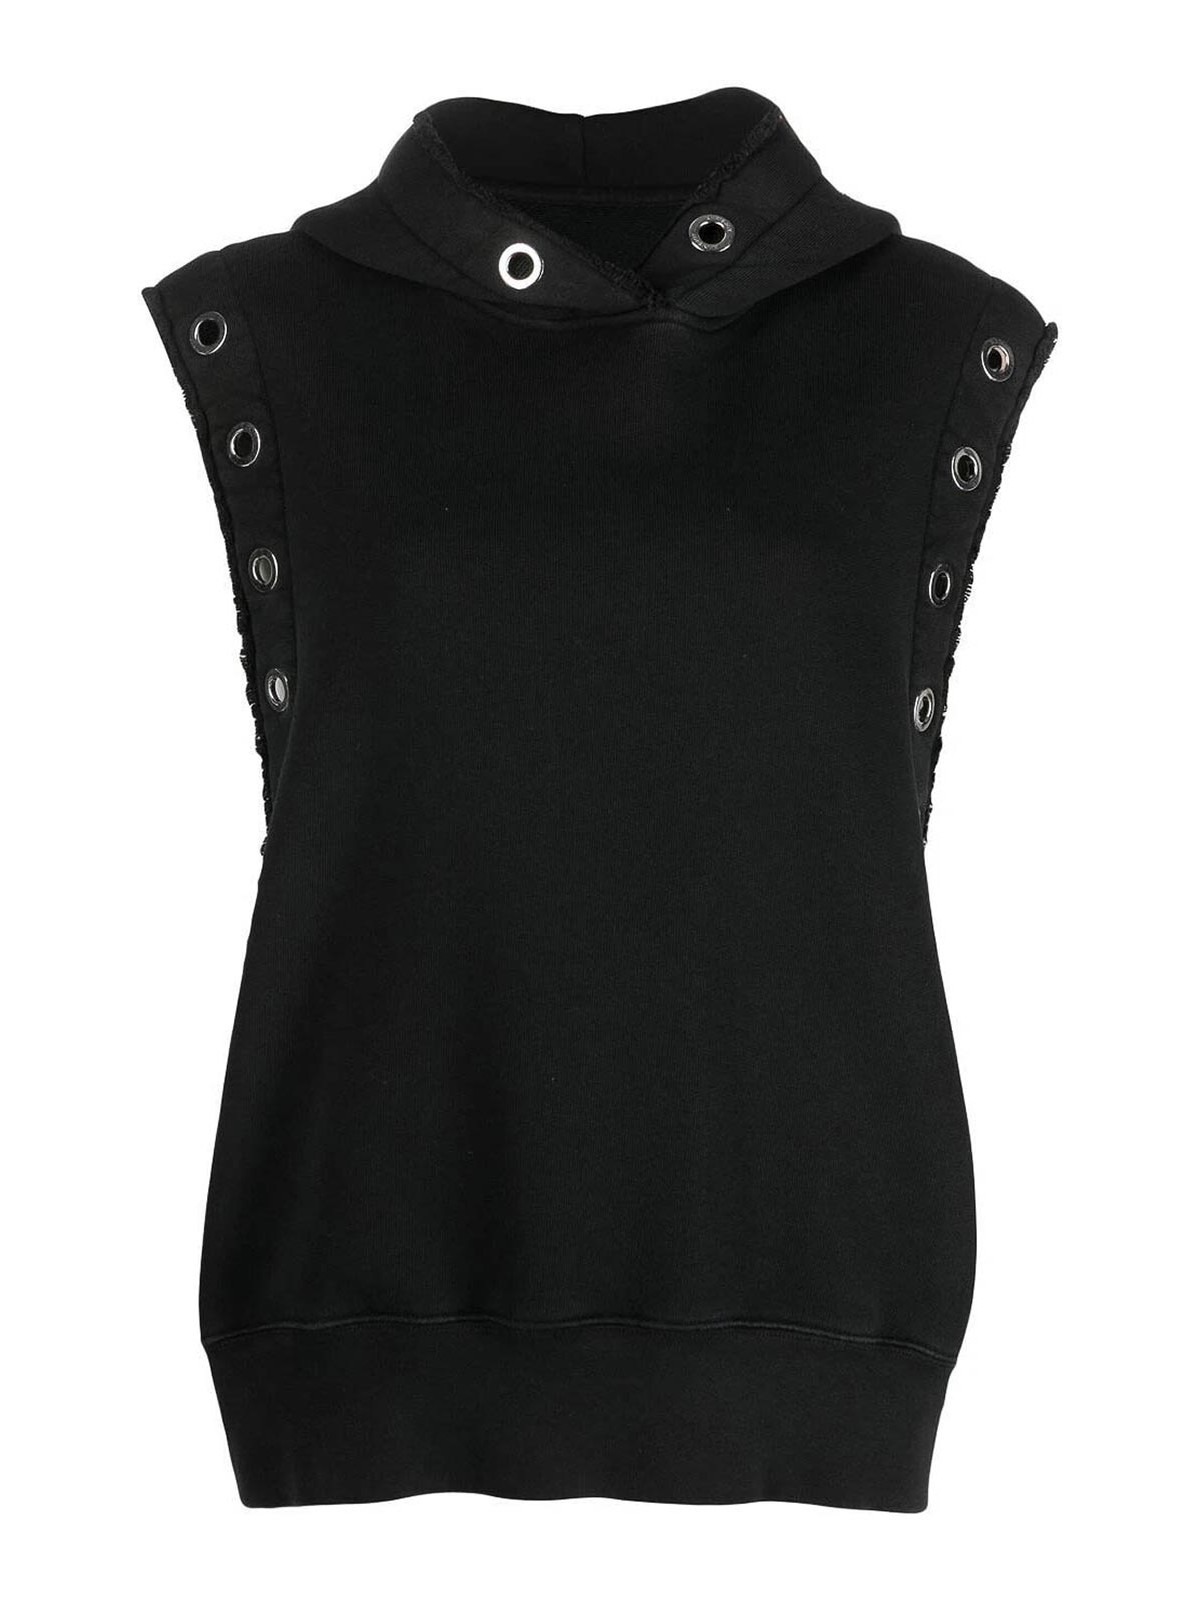 Shop Khrisjoy Sleeveless Hoodi Sweater Oversize In Black